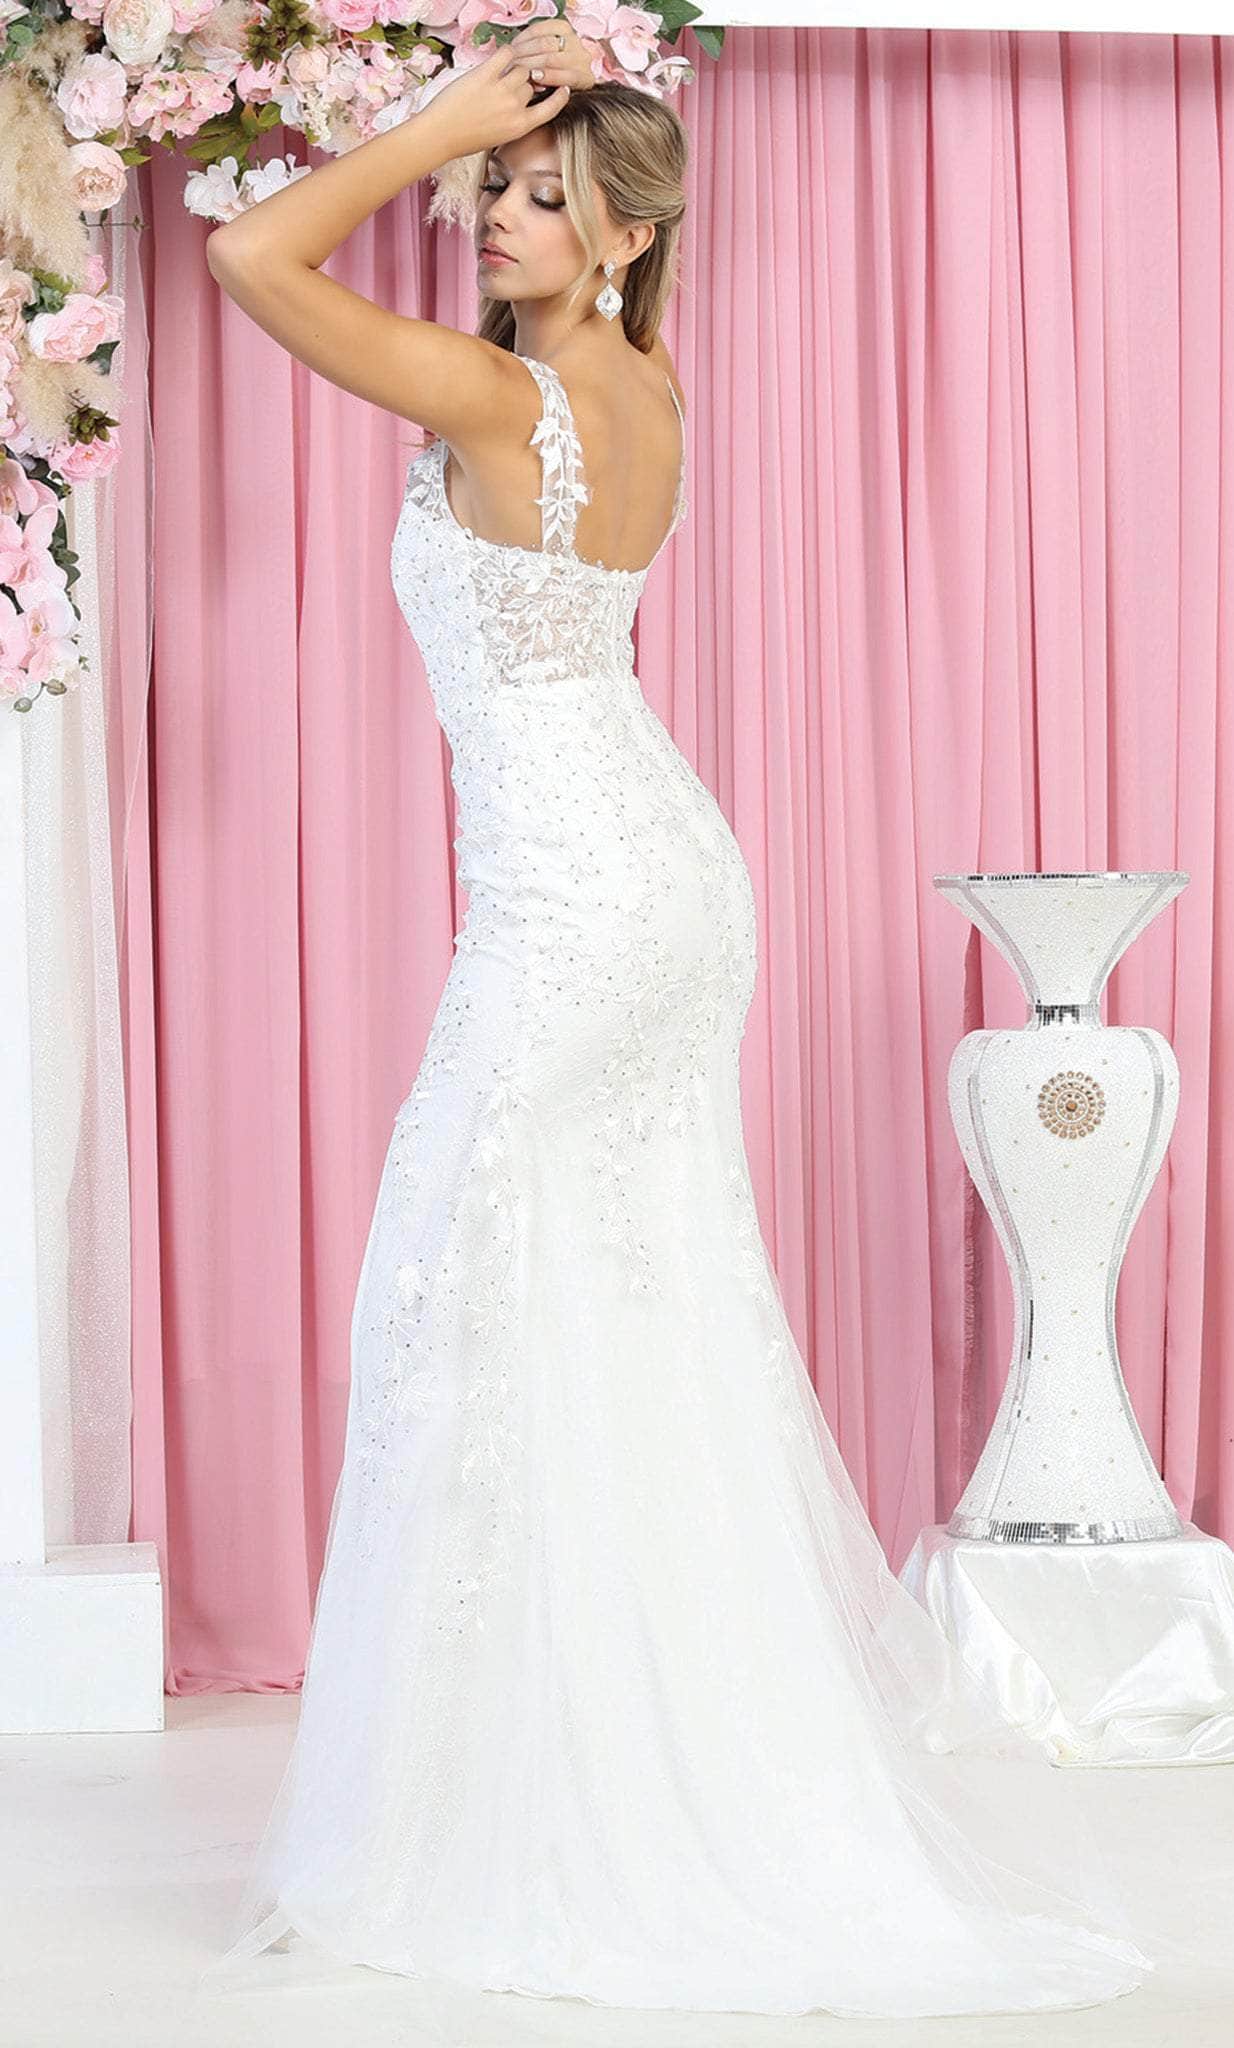 May Queen RQ7933 - V Neck Wedding Dress Bridal Dresses